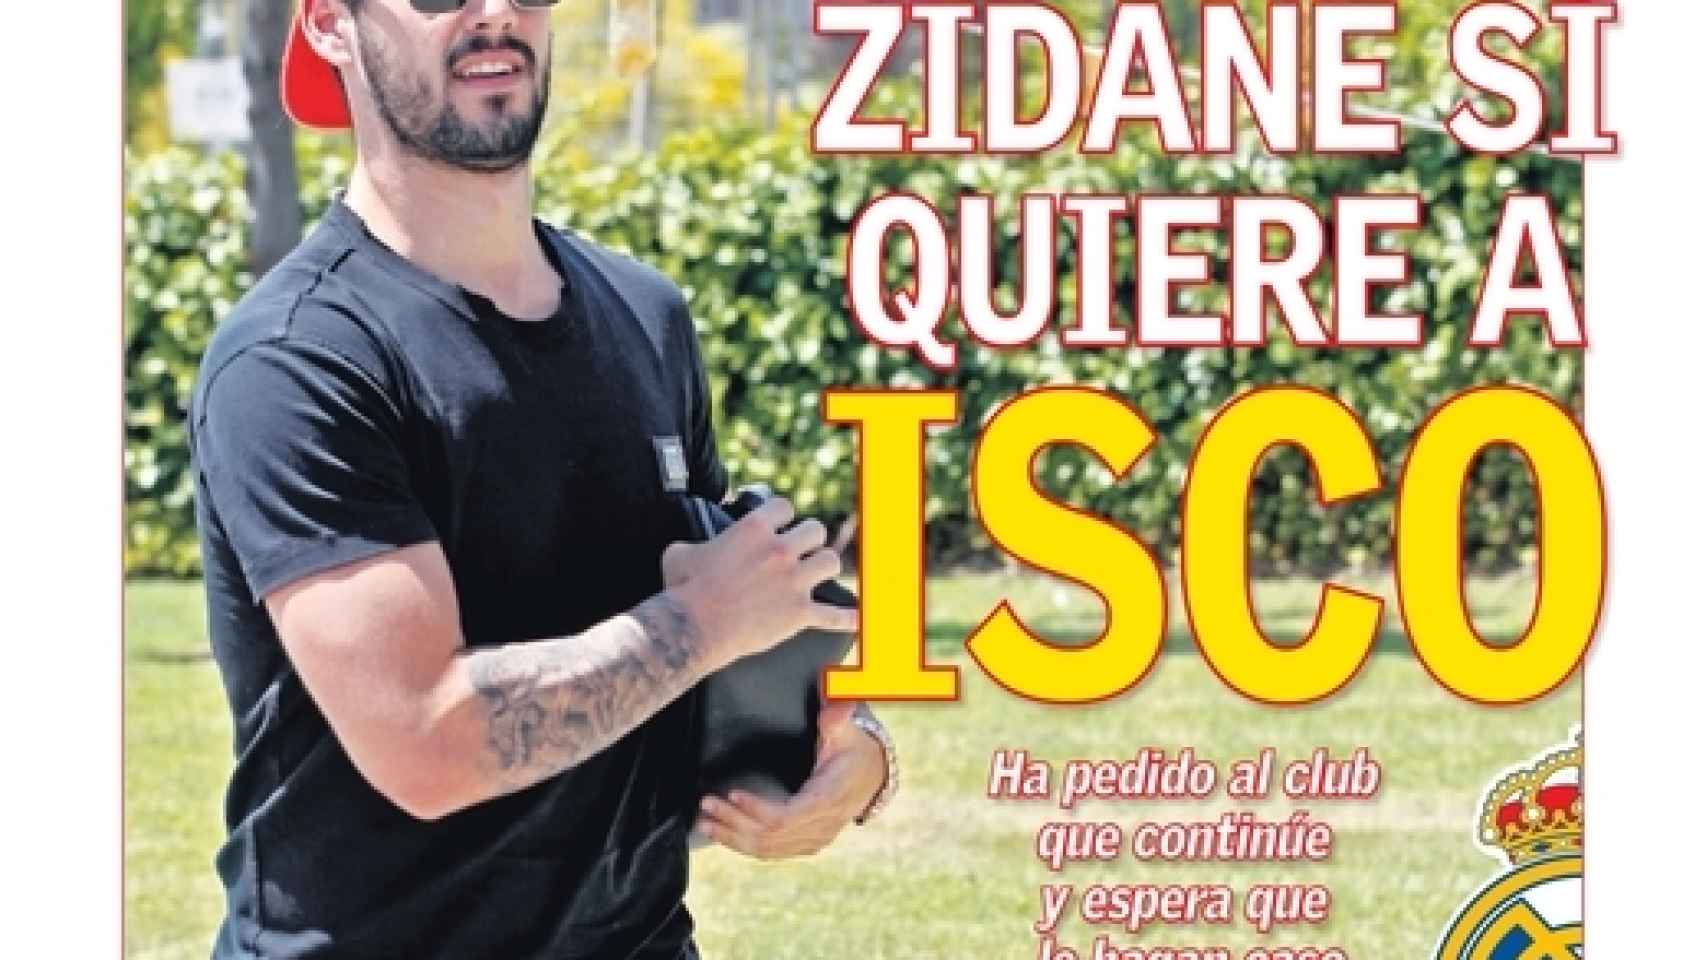 La portada del diario AS (11/05/2019)